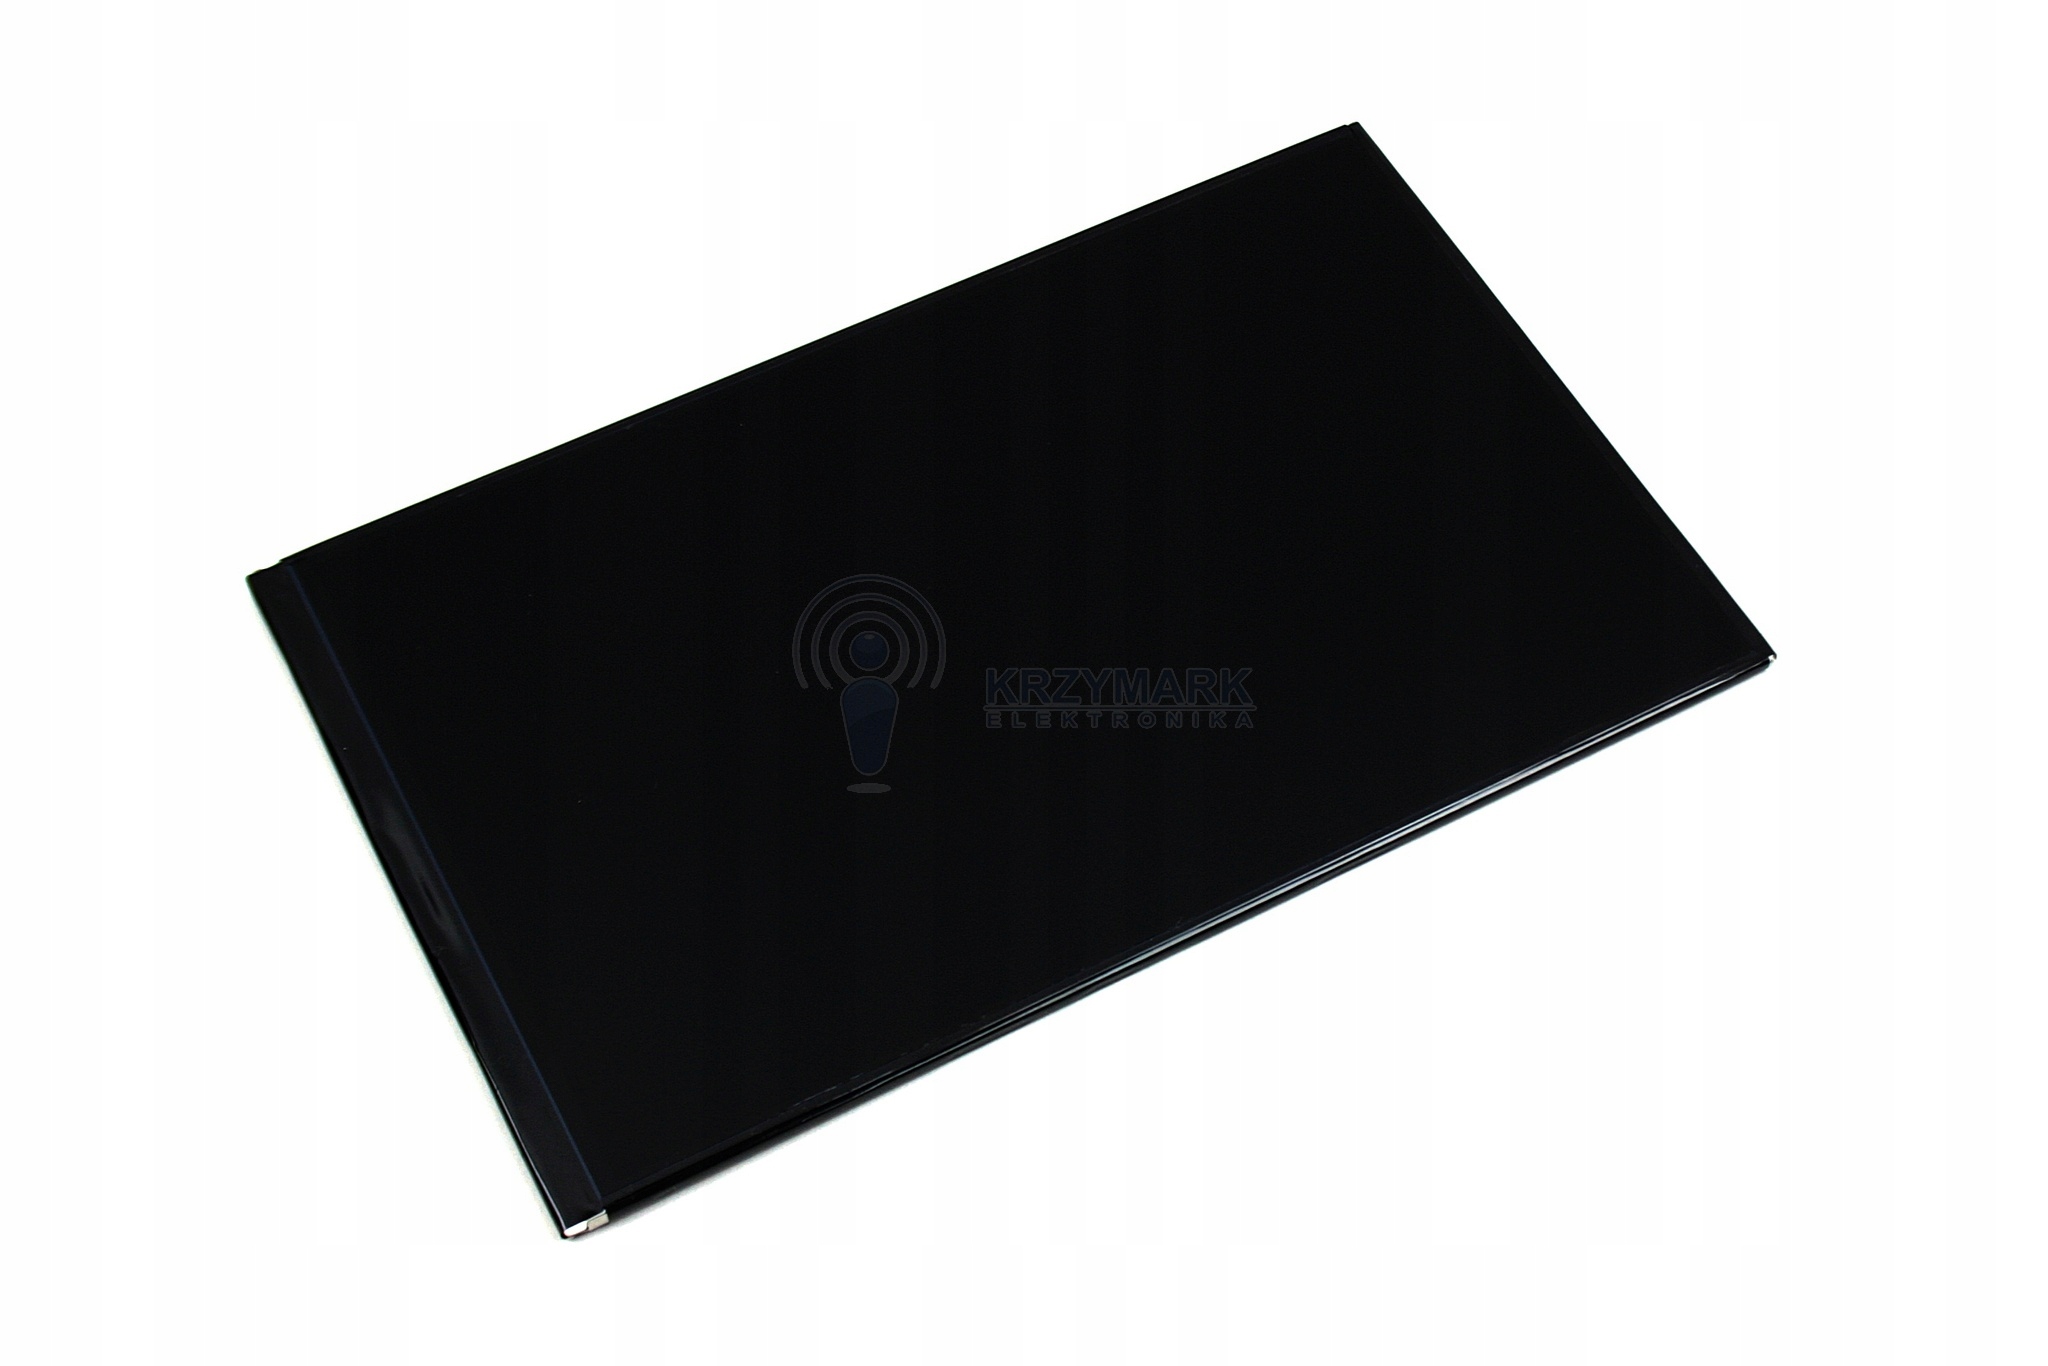 WYŚWIETLACZ EKRAN LCD LENOVO A5500 A8-50 A5500H Z NARZĘDZIAMI - Wyświetlacze do tabletów